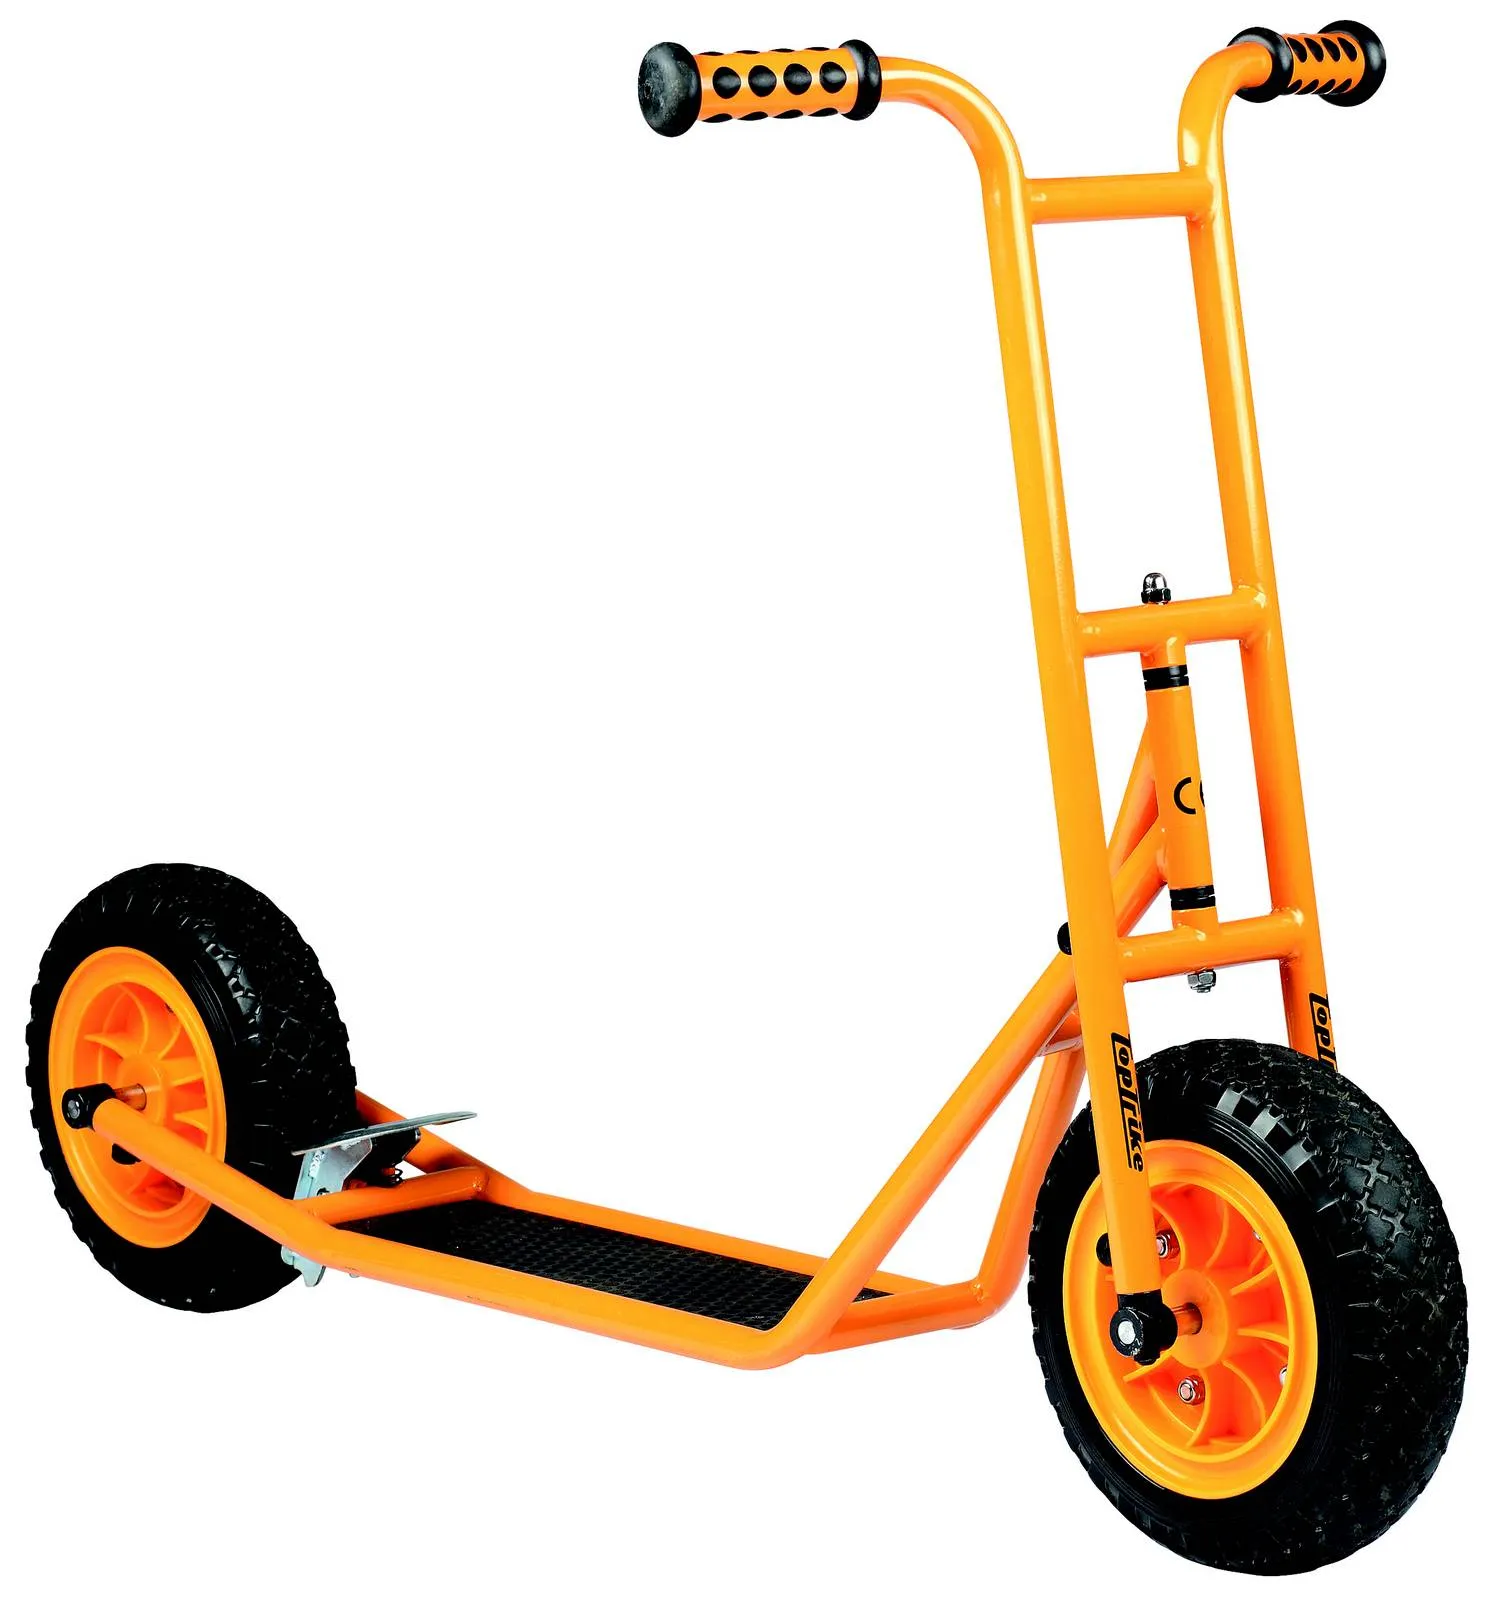 Gelber Roller mit profilierten Reifen und Bremse.